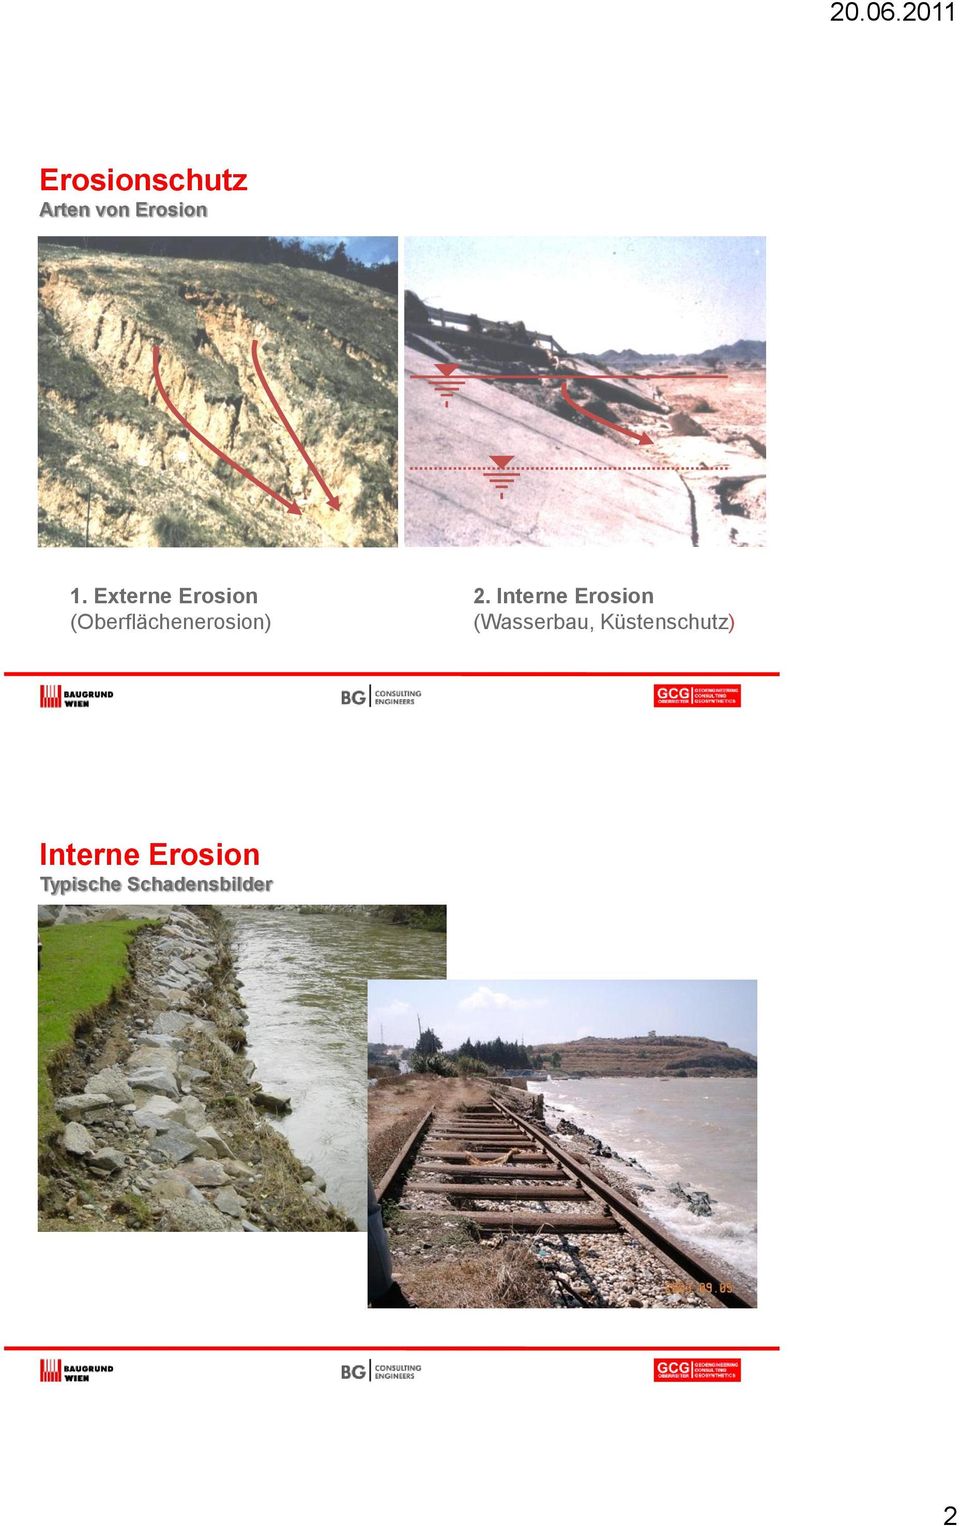 Interne Erosion (Wasserbau,